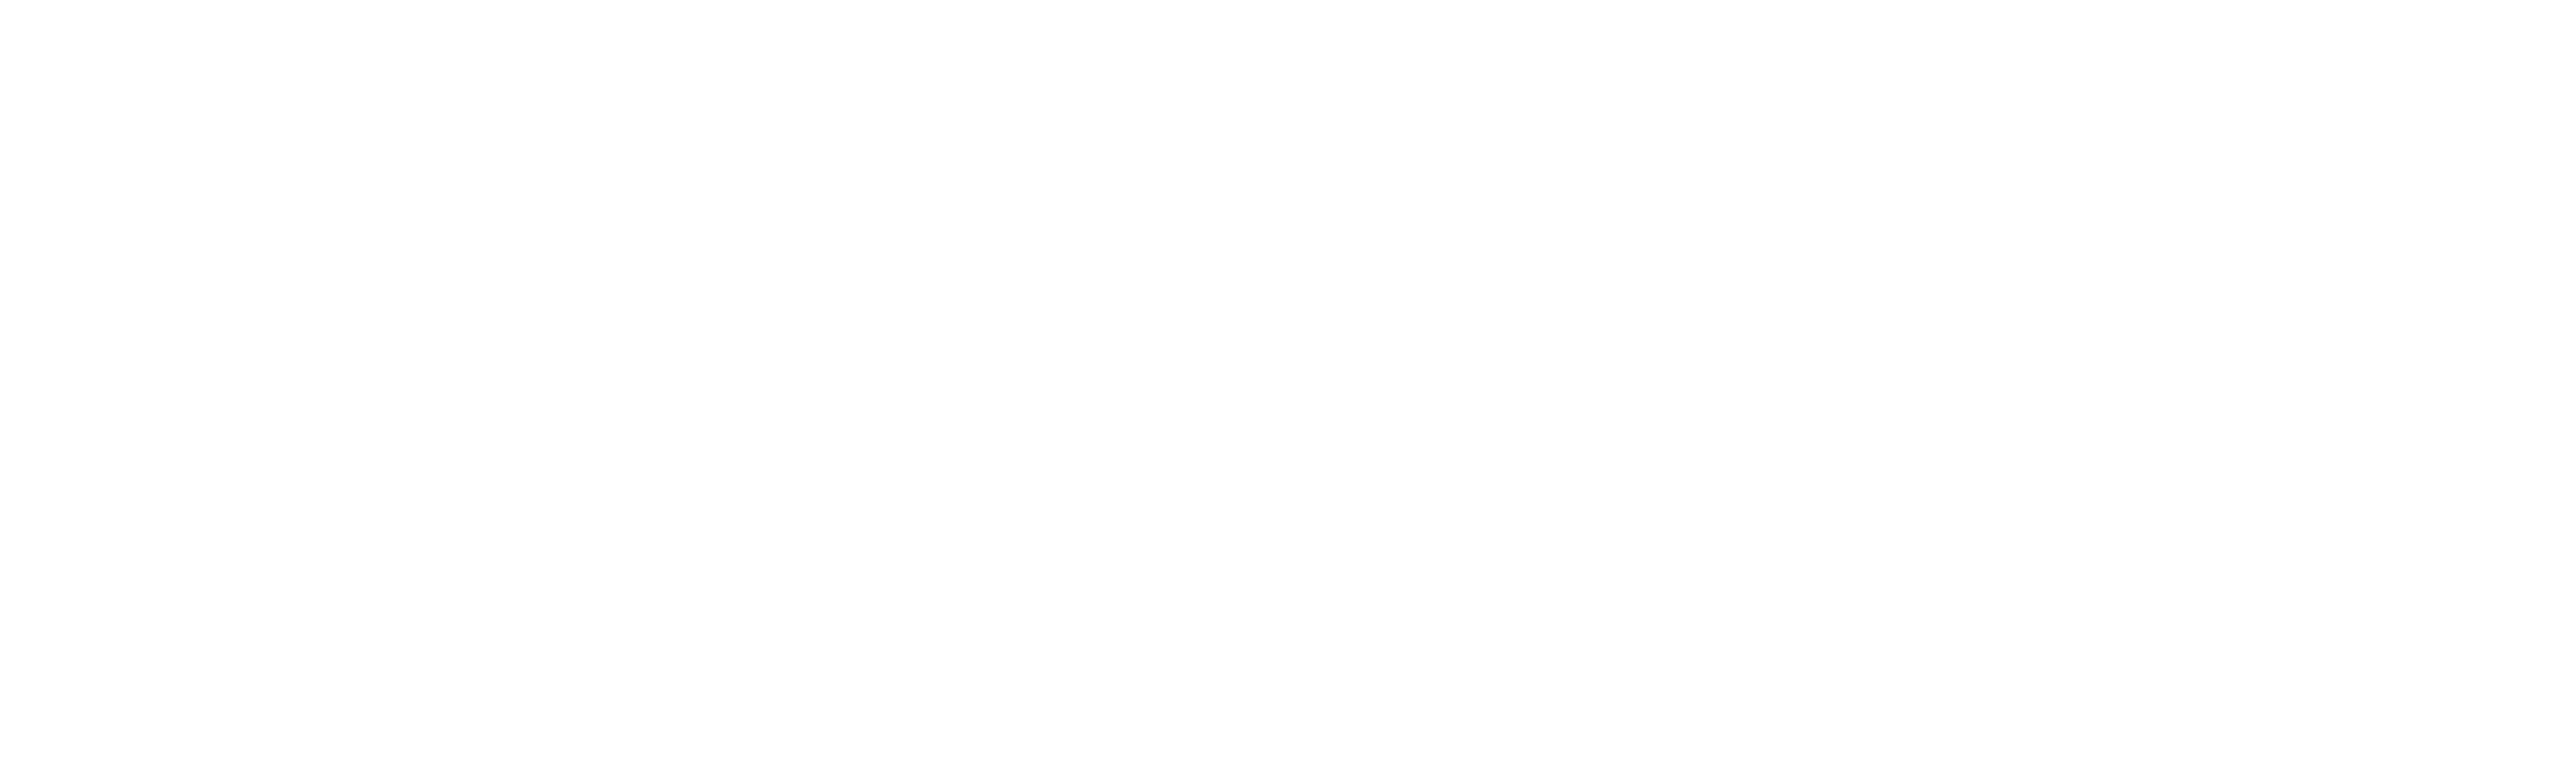 L2 Casuals Logo